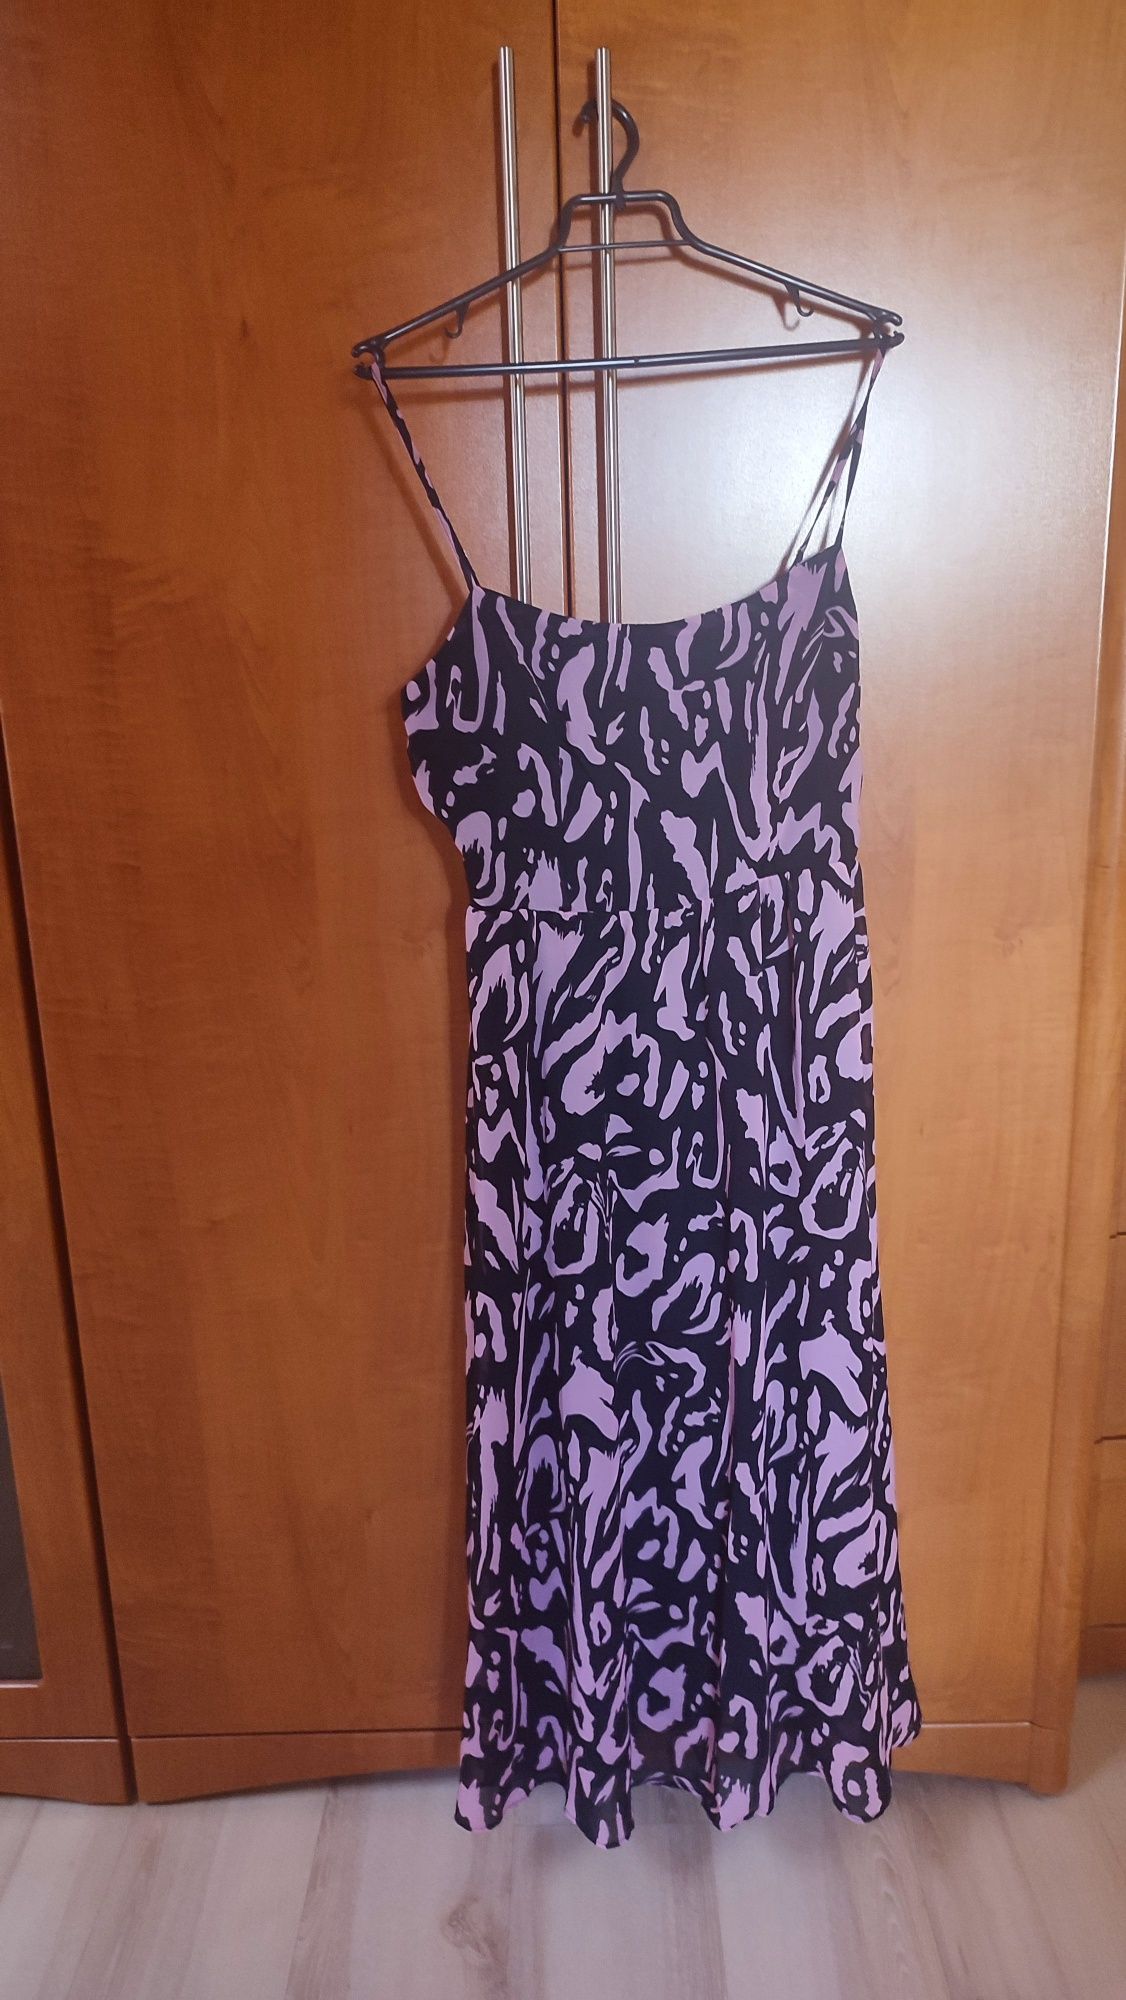 Sukienka na ramiączkach Mohito
Długość 125
Szerokość pod pachami 45 cm